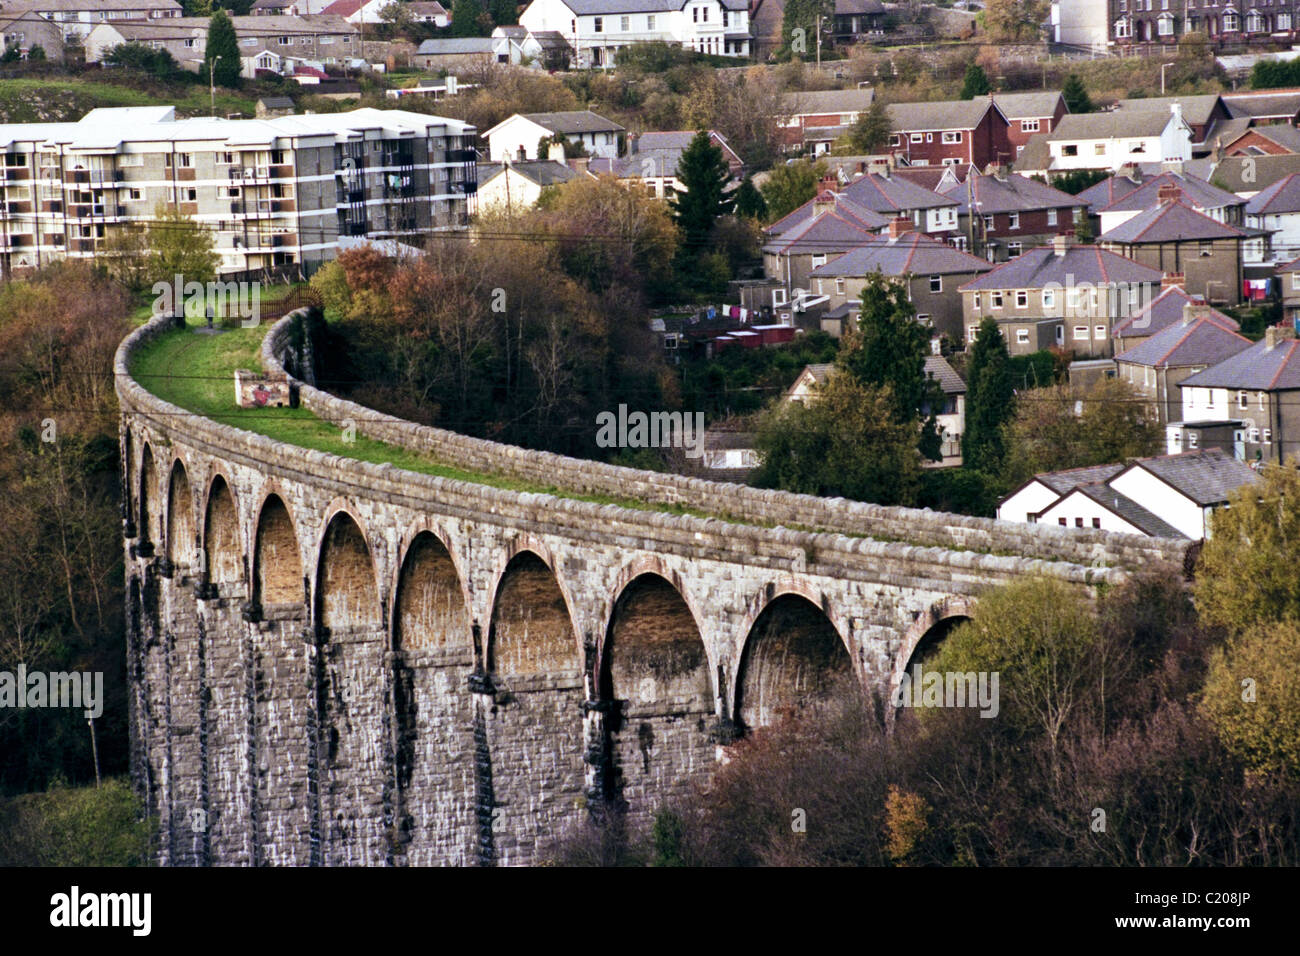 Cefn Coed Viaduct built in 1866 Merthyr Tydfil South Wales Valleys UK Stock Photo